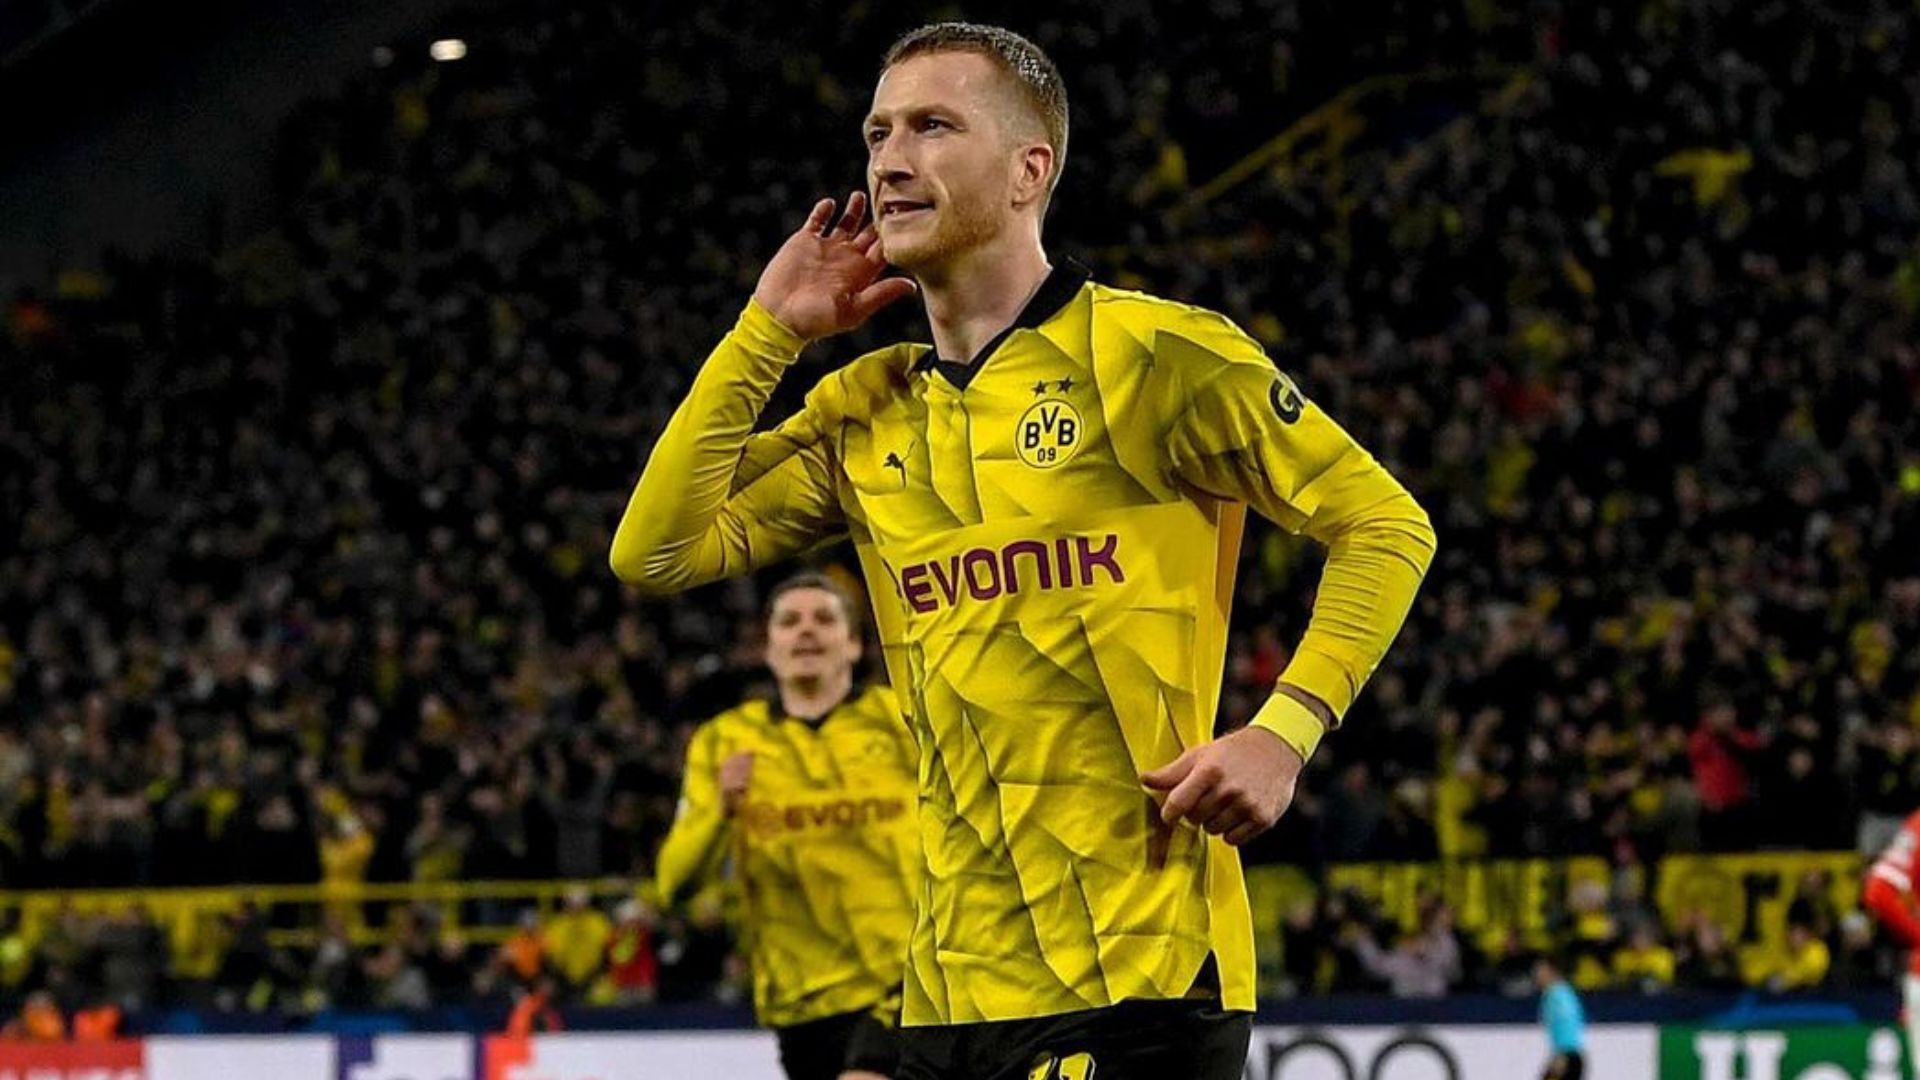 FIM DE UMA ERA: Marco Reus anuncia saída do Borussia Dortmund após 21 anos